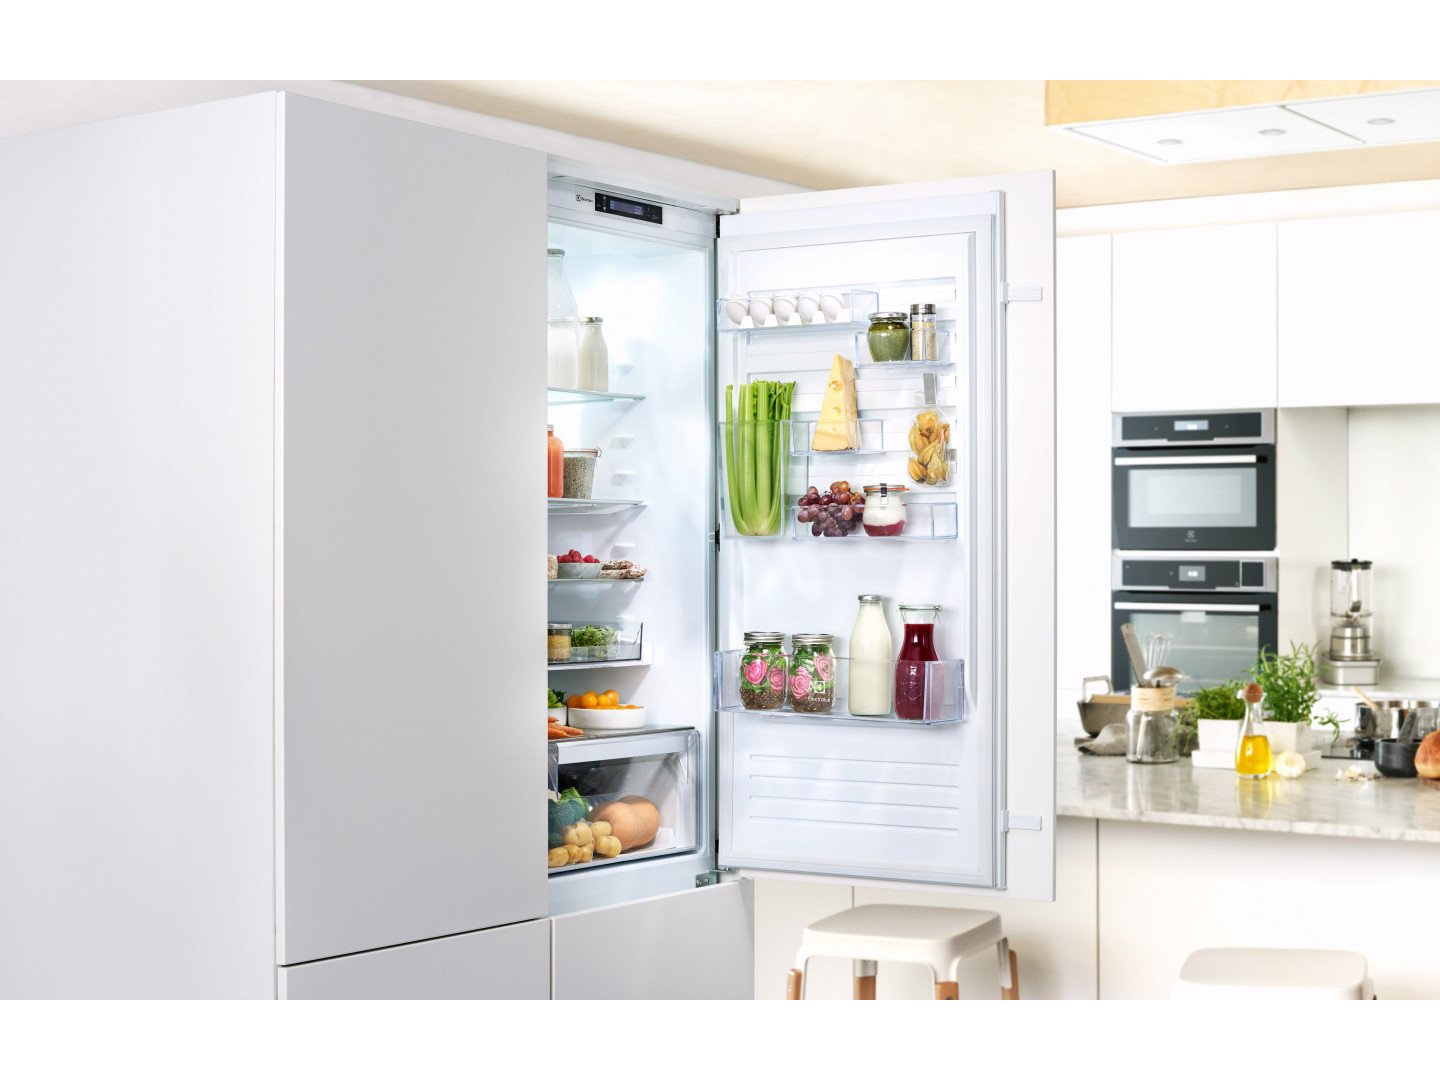 Топ встраиваемых холодильников. Встраиваемый холодильник Electrolux enn3074efw. Встроенный холодильник Электролюкс. Встраиваемый холодильник Электролюкс. Встраиваемый холодильник Electrolux enn.